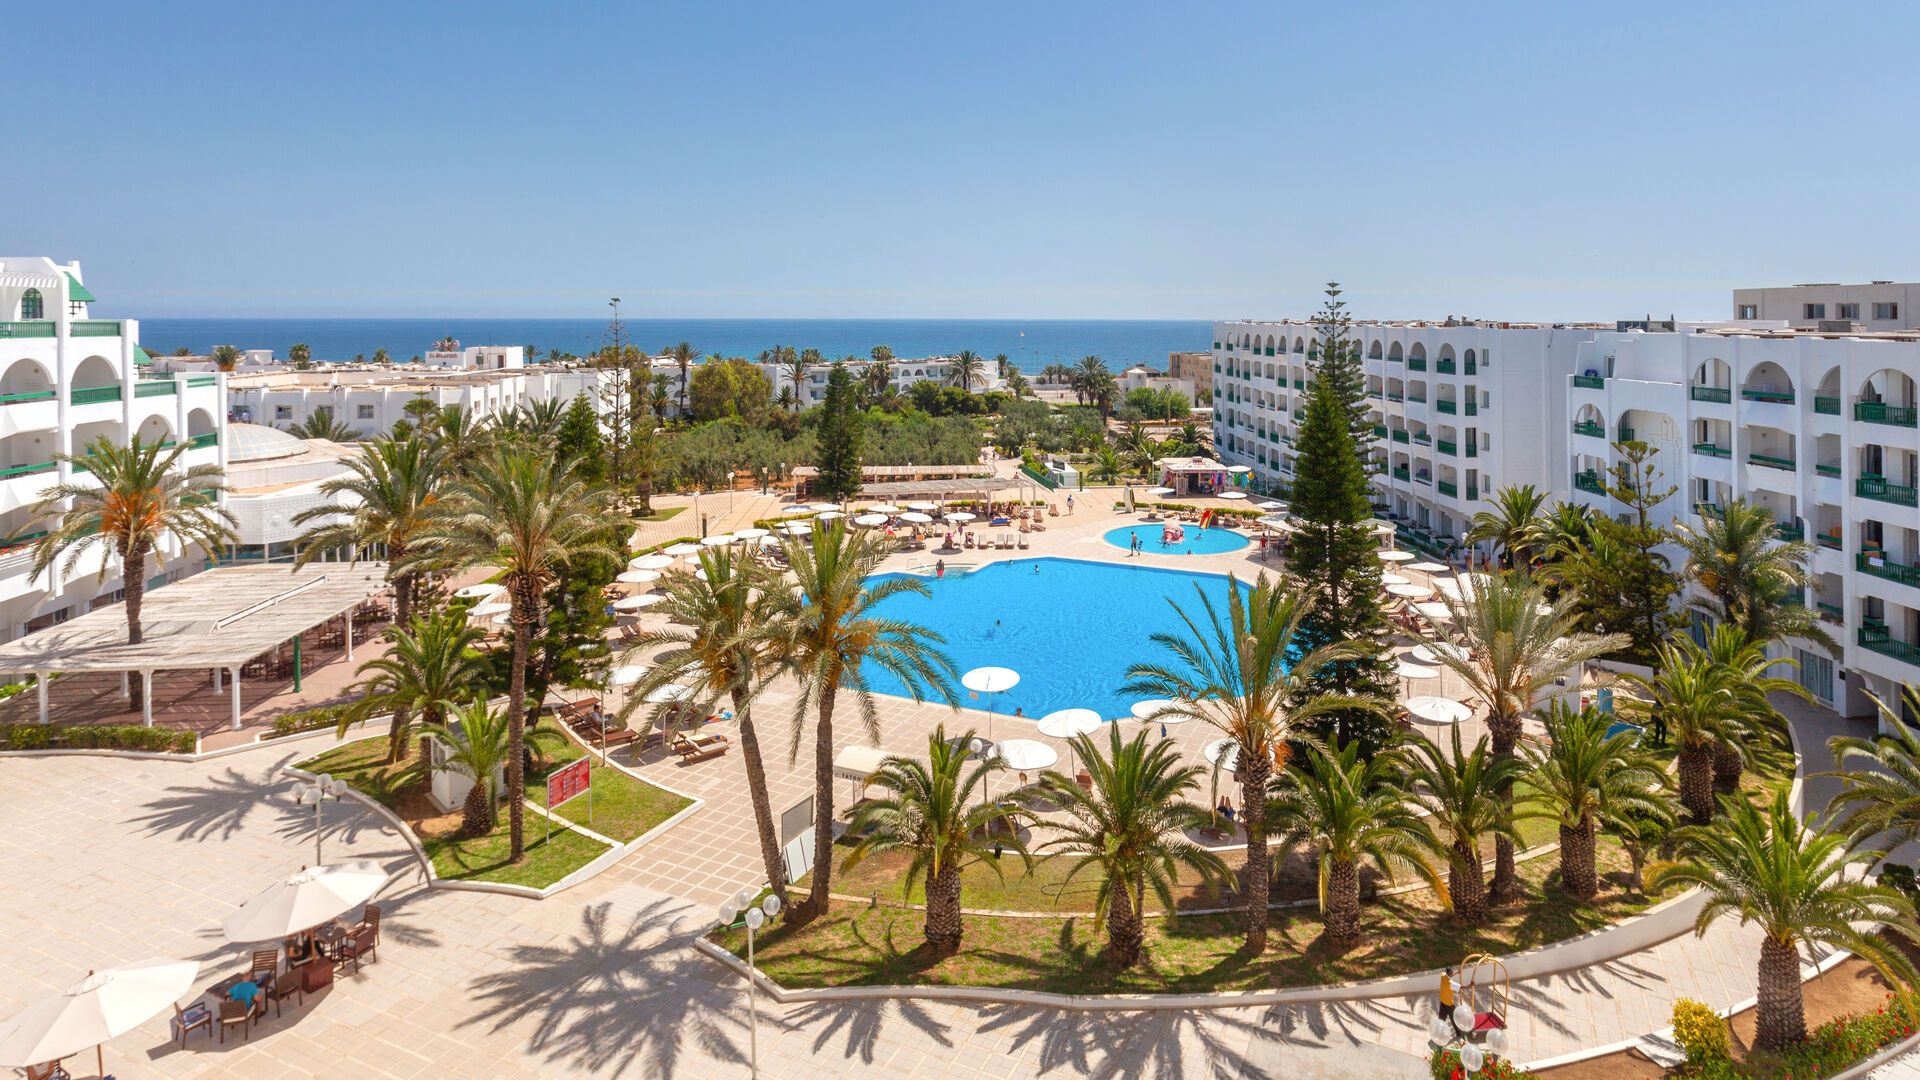 Tunisie - Port el Kantaoui - Hotel El Mouradi Palace 5*